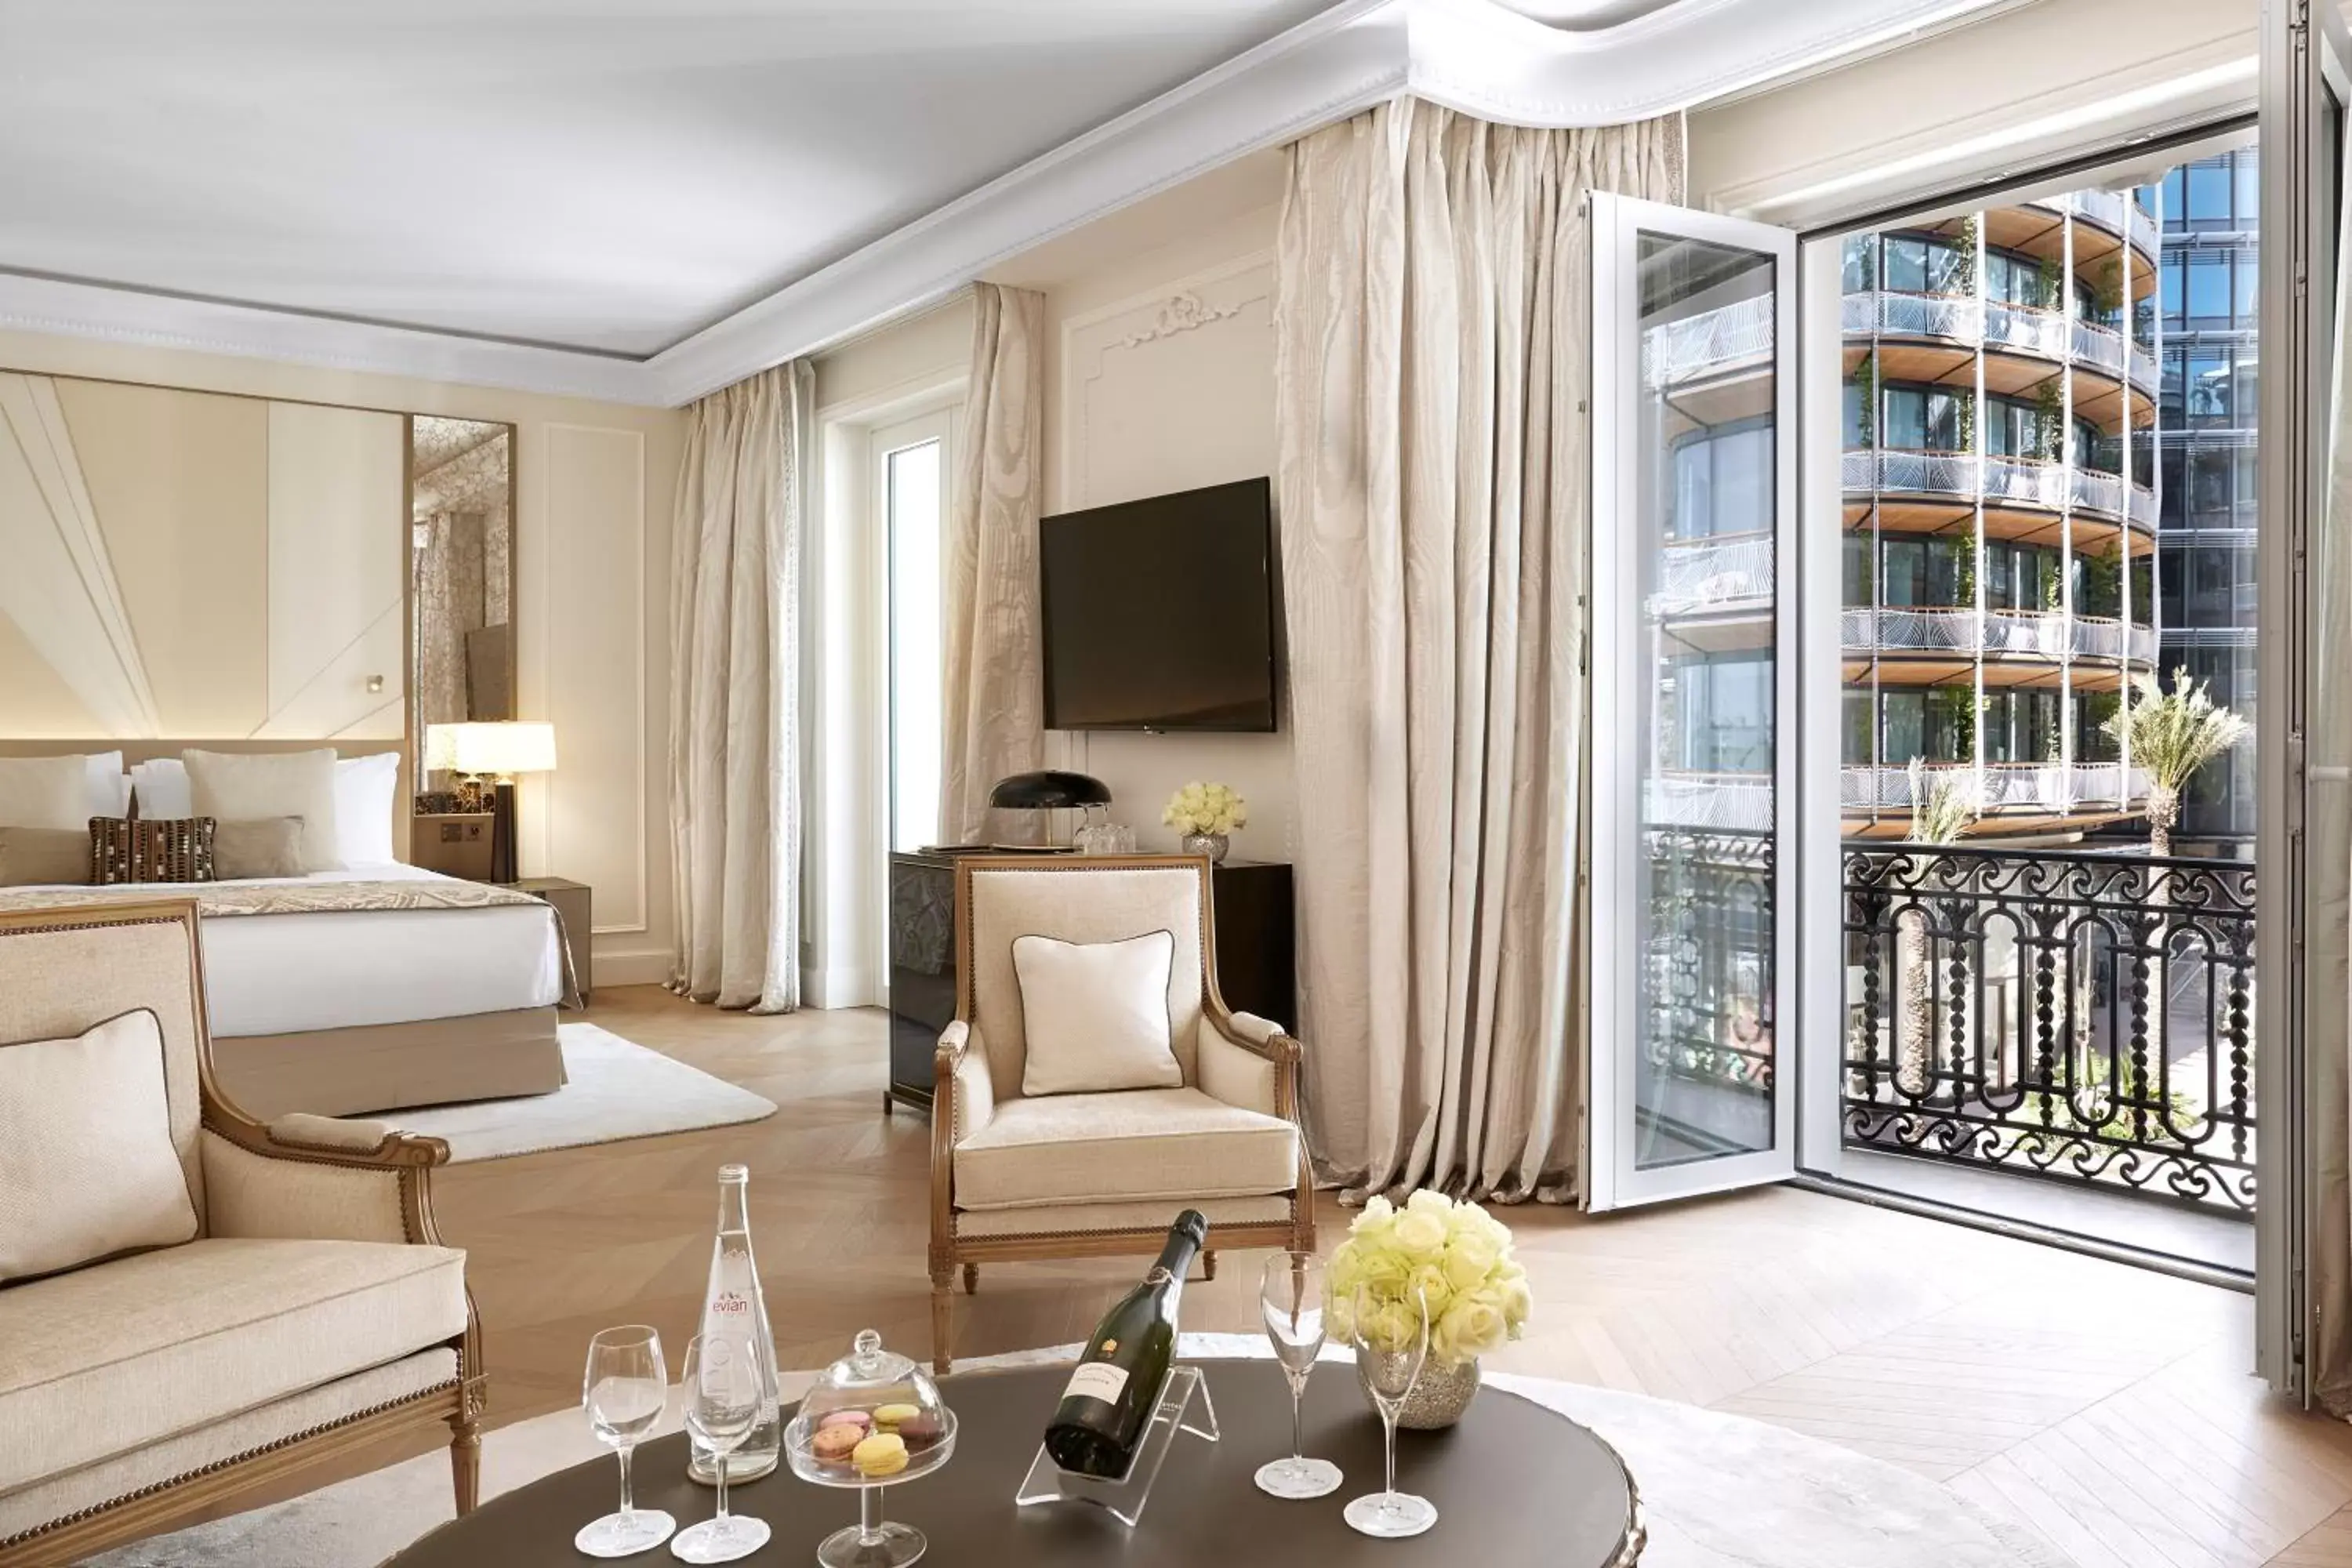 Photo of the whole room in Hôtel de Paris Monte-Carlo